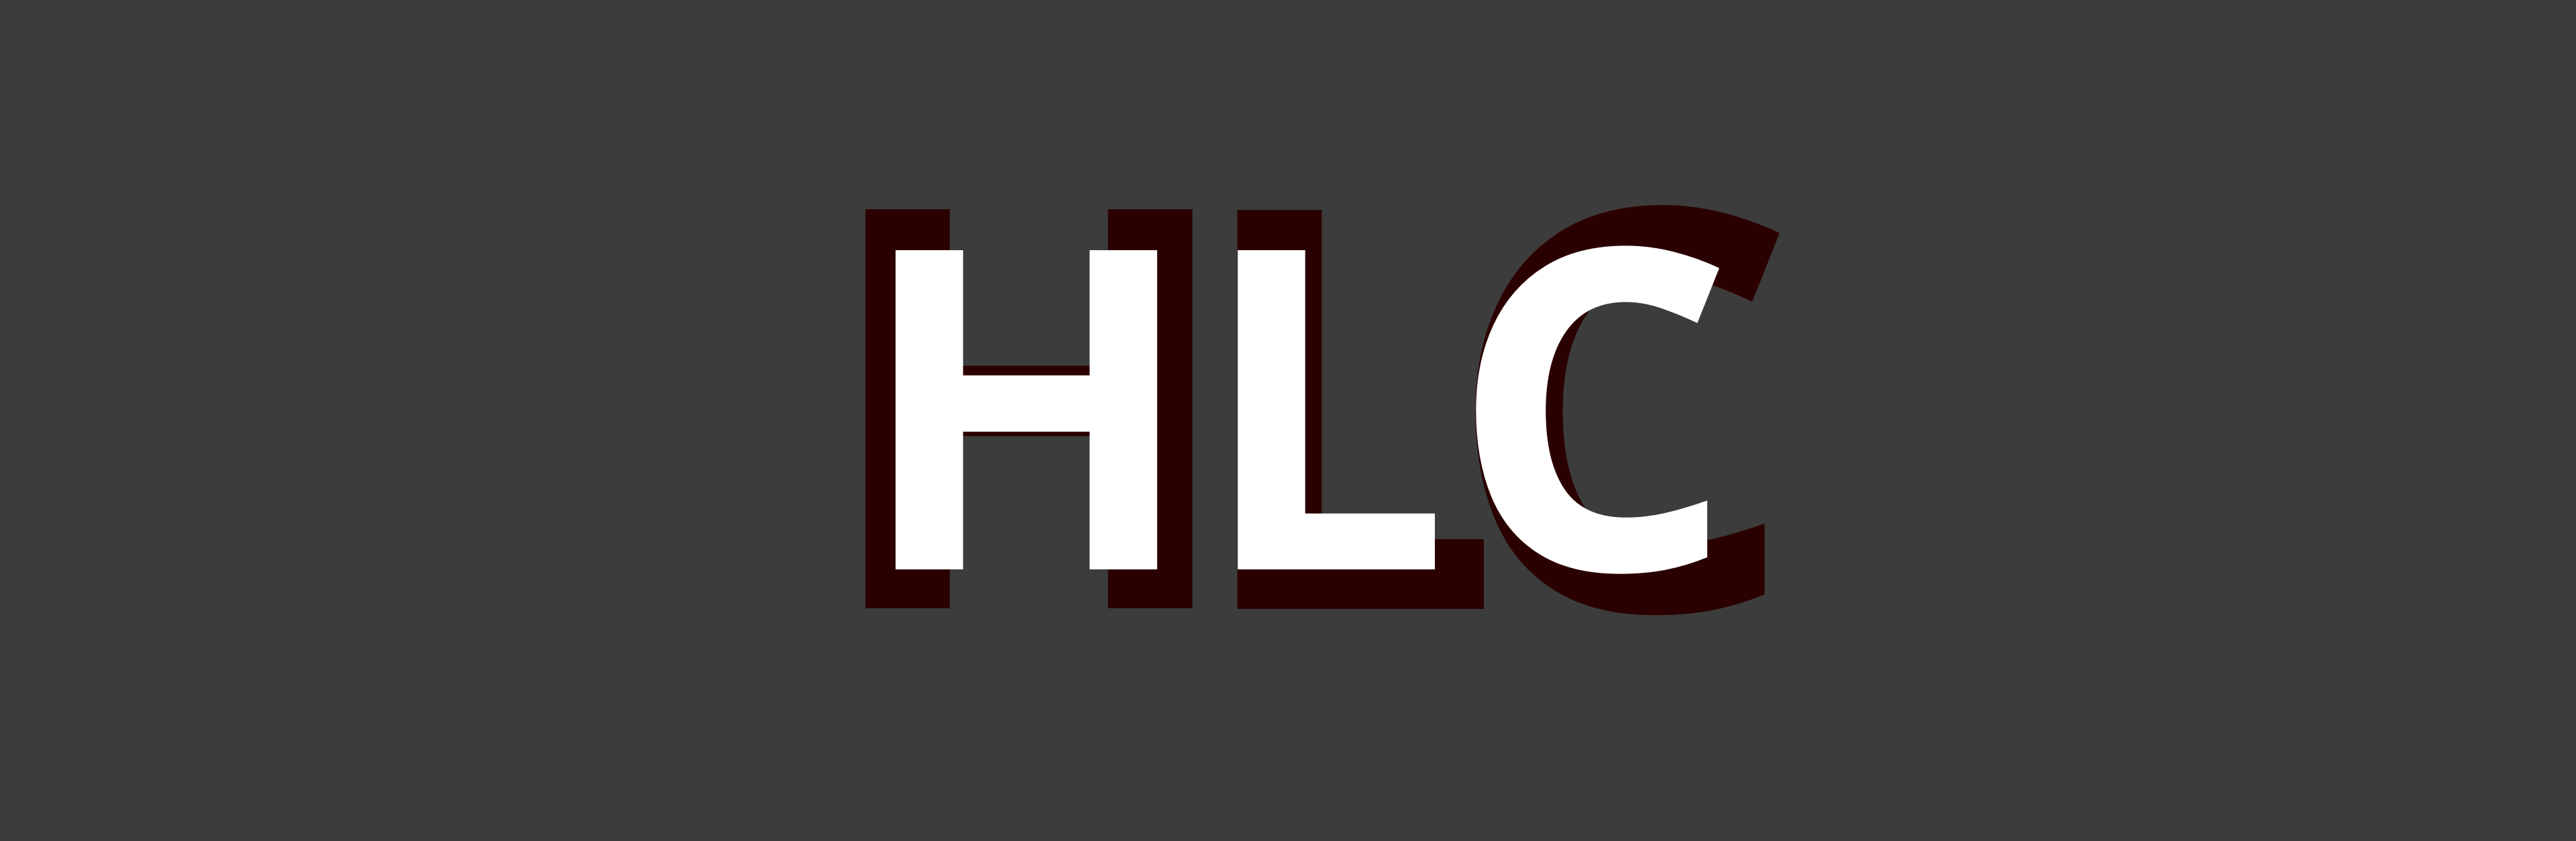 hlc_logo.png